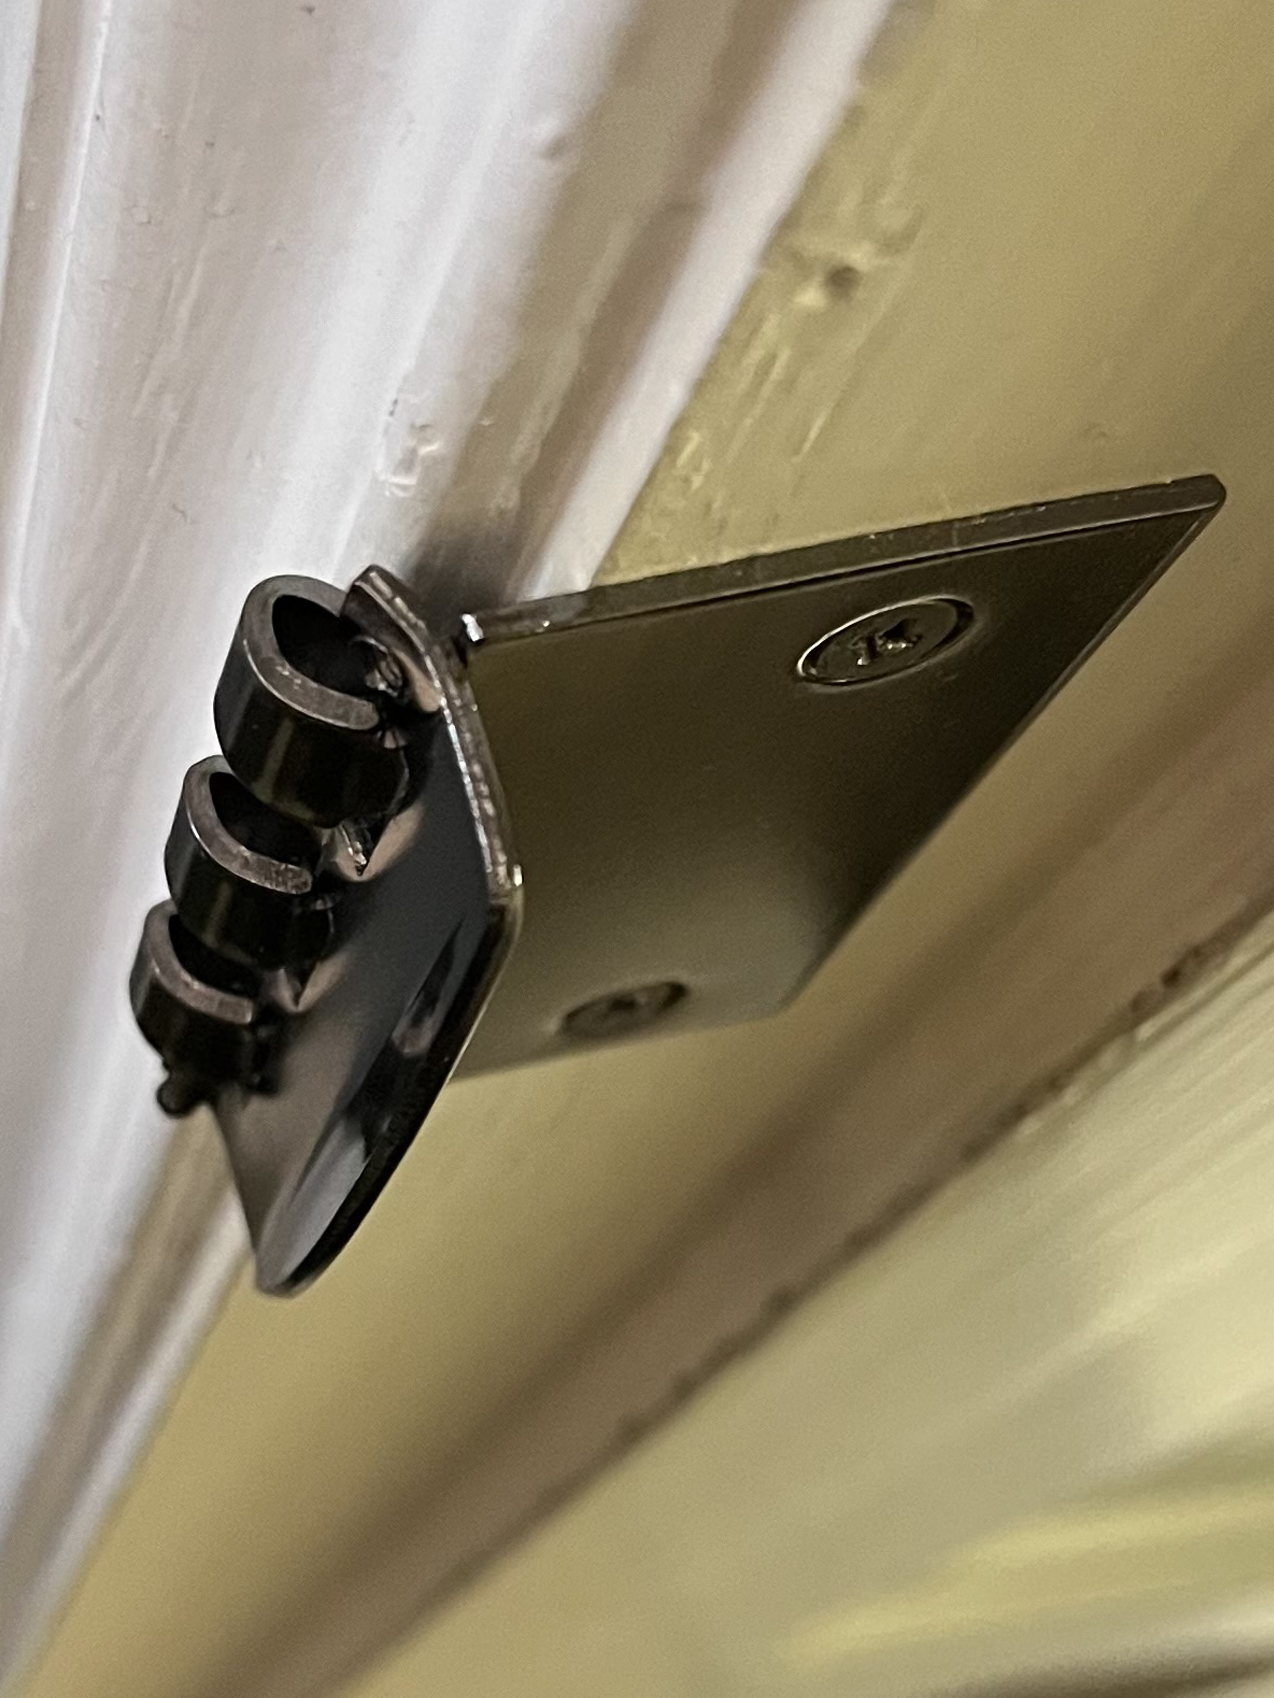 Flip action lock-image of Door Lock Option B